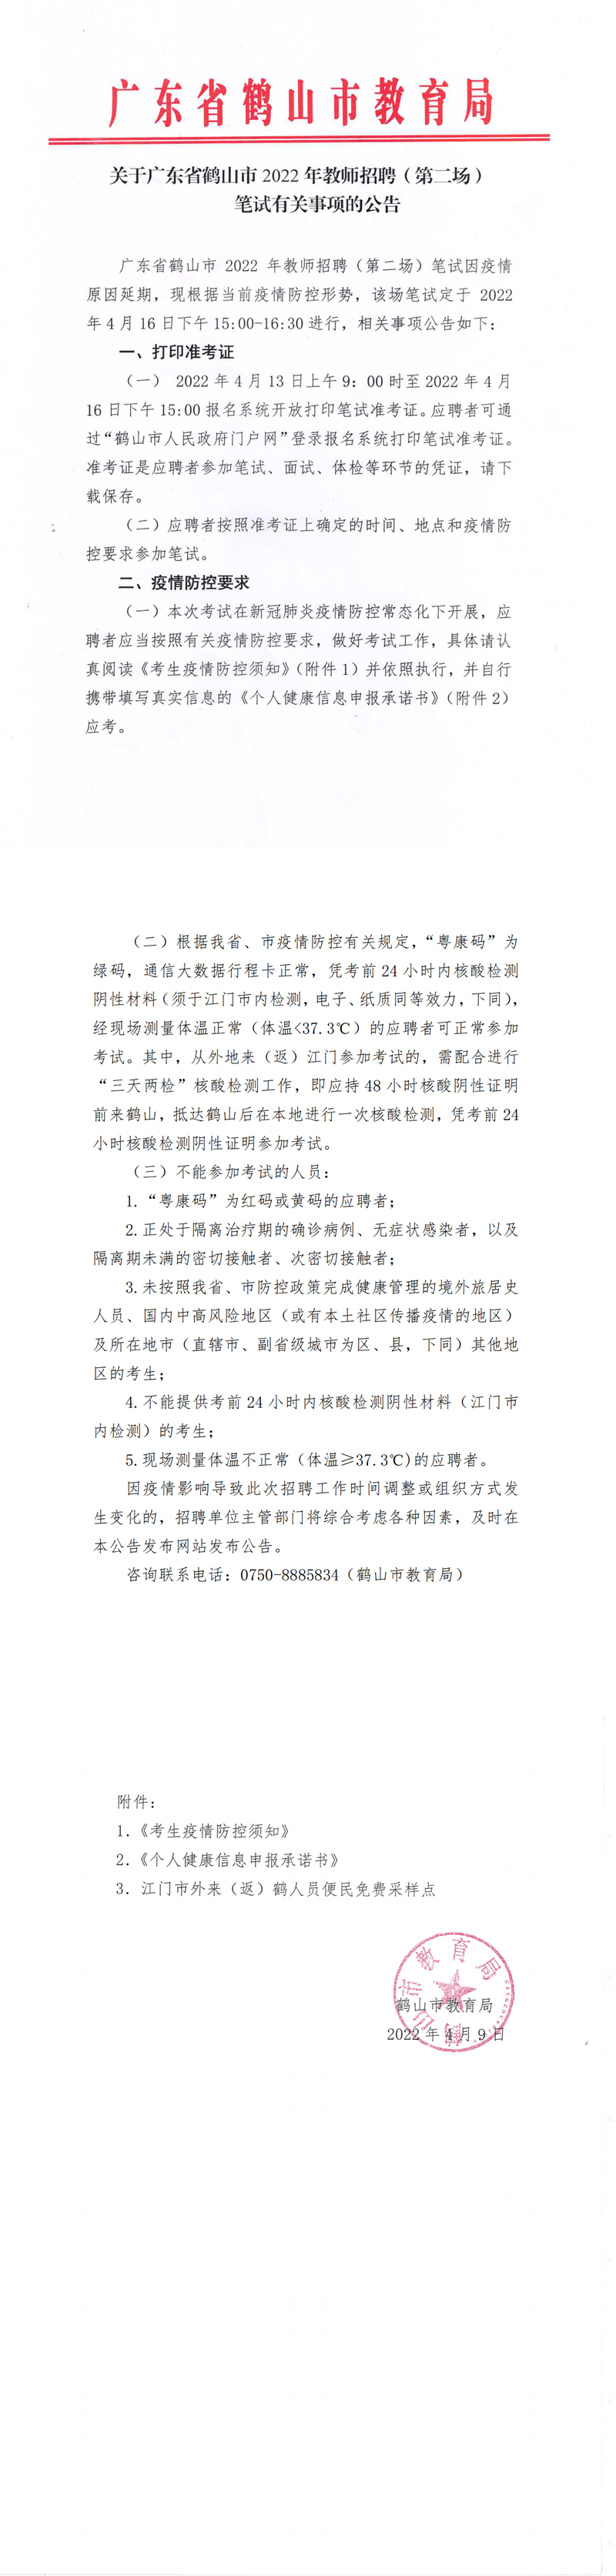 关于广东省鹤山市2022年教师招聘（第二场）笔试有关事项的公告4.9_00.png